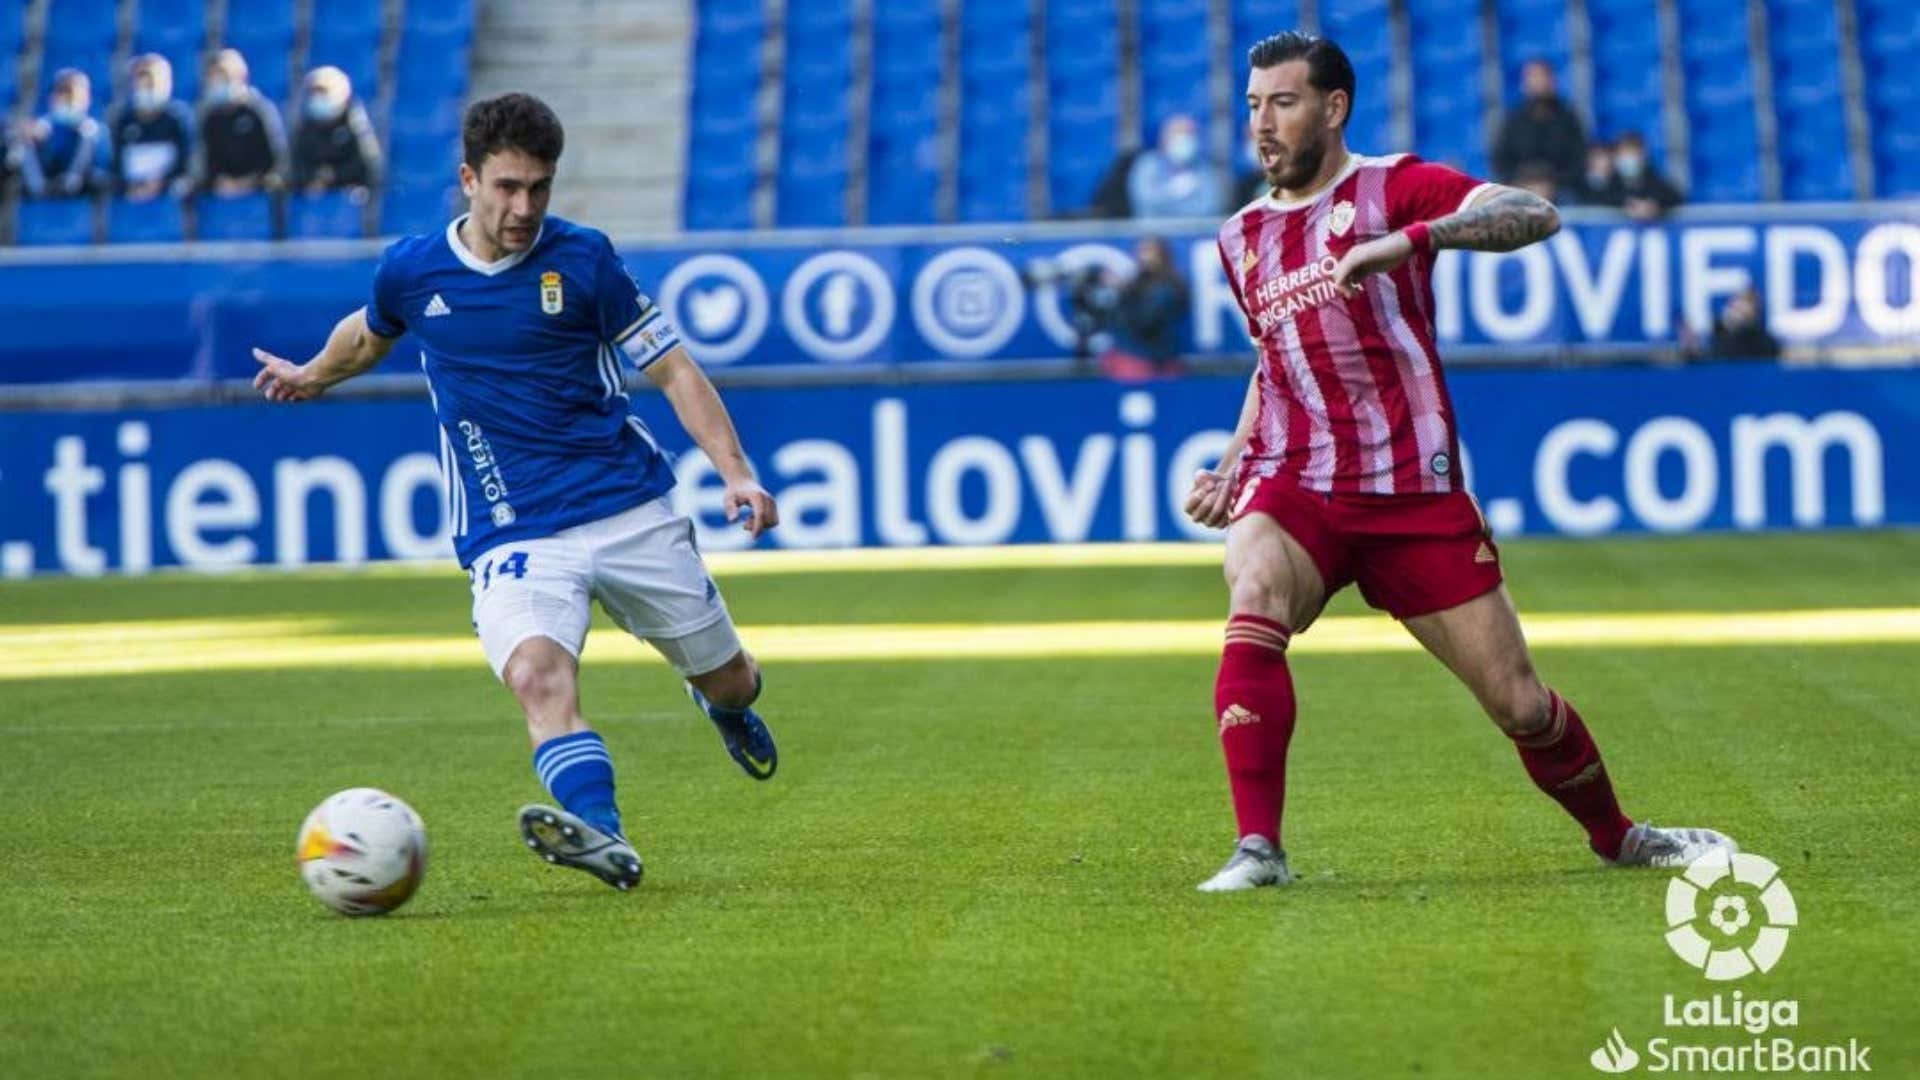 Oviedo vs. Ponferradina